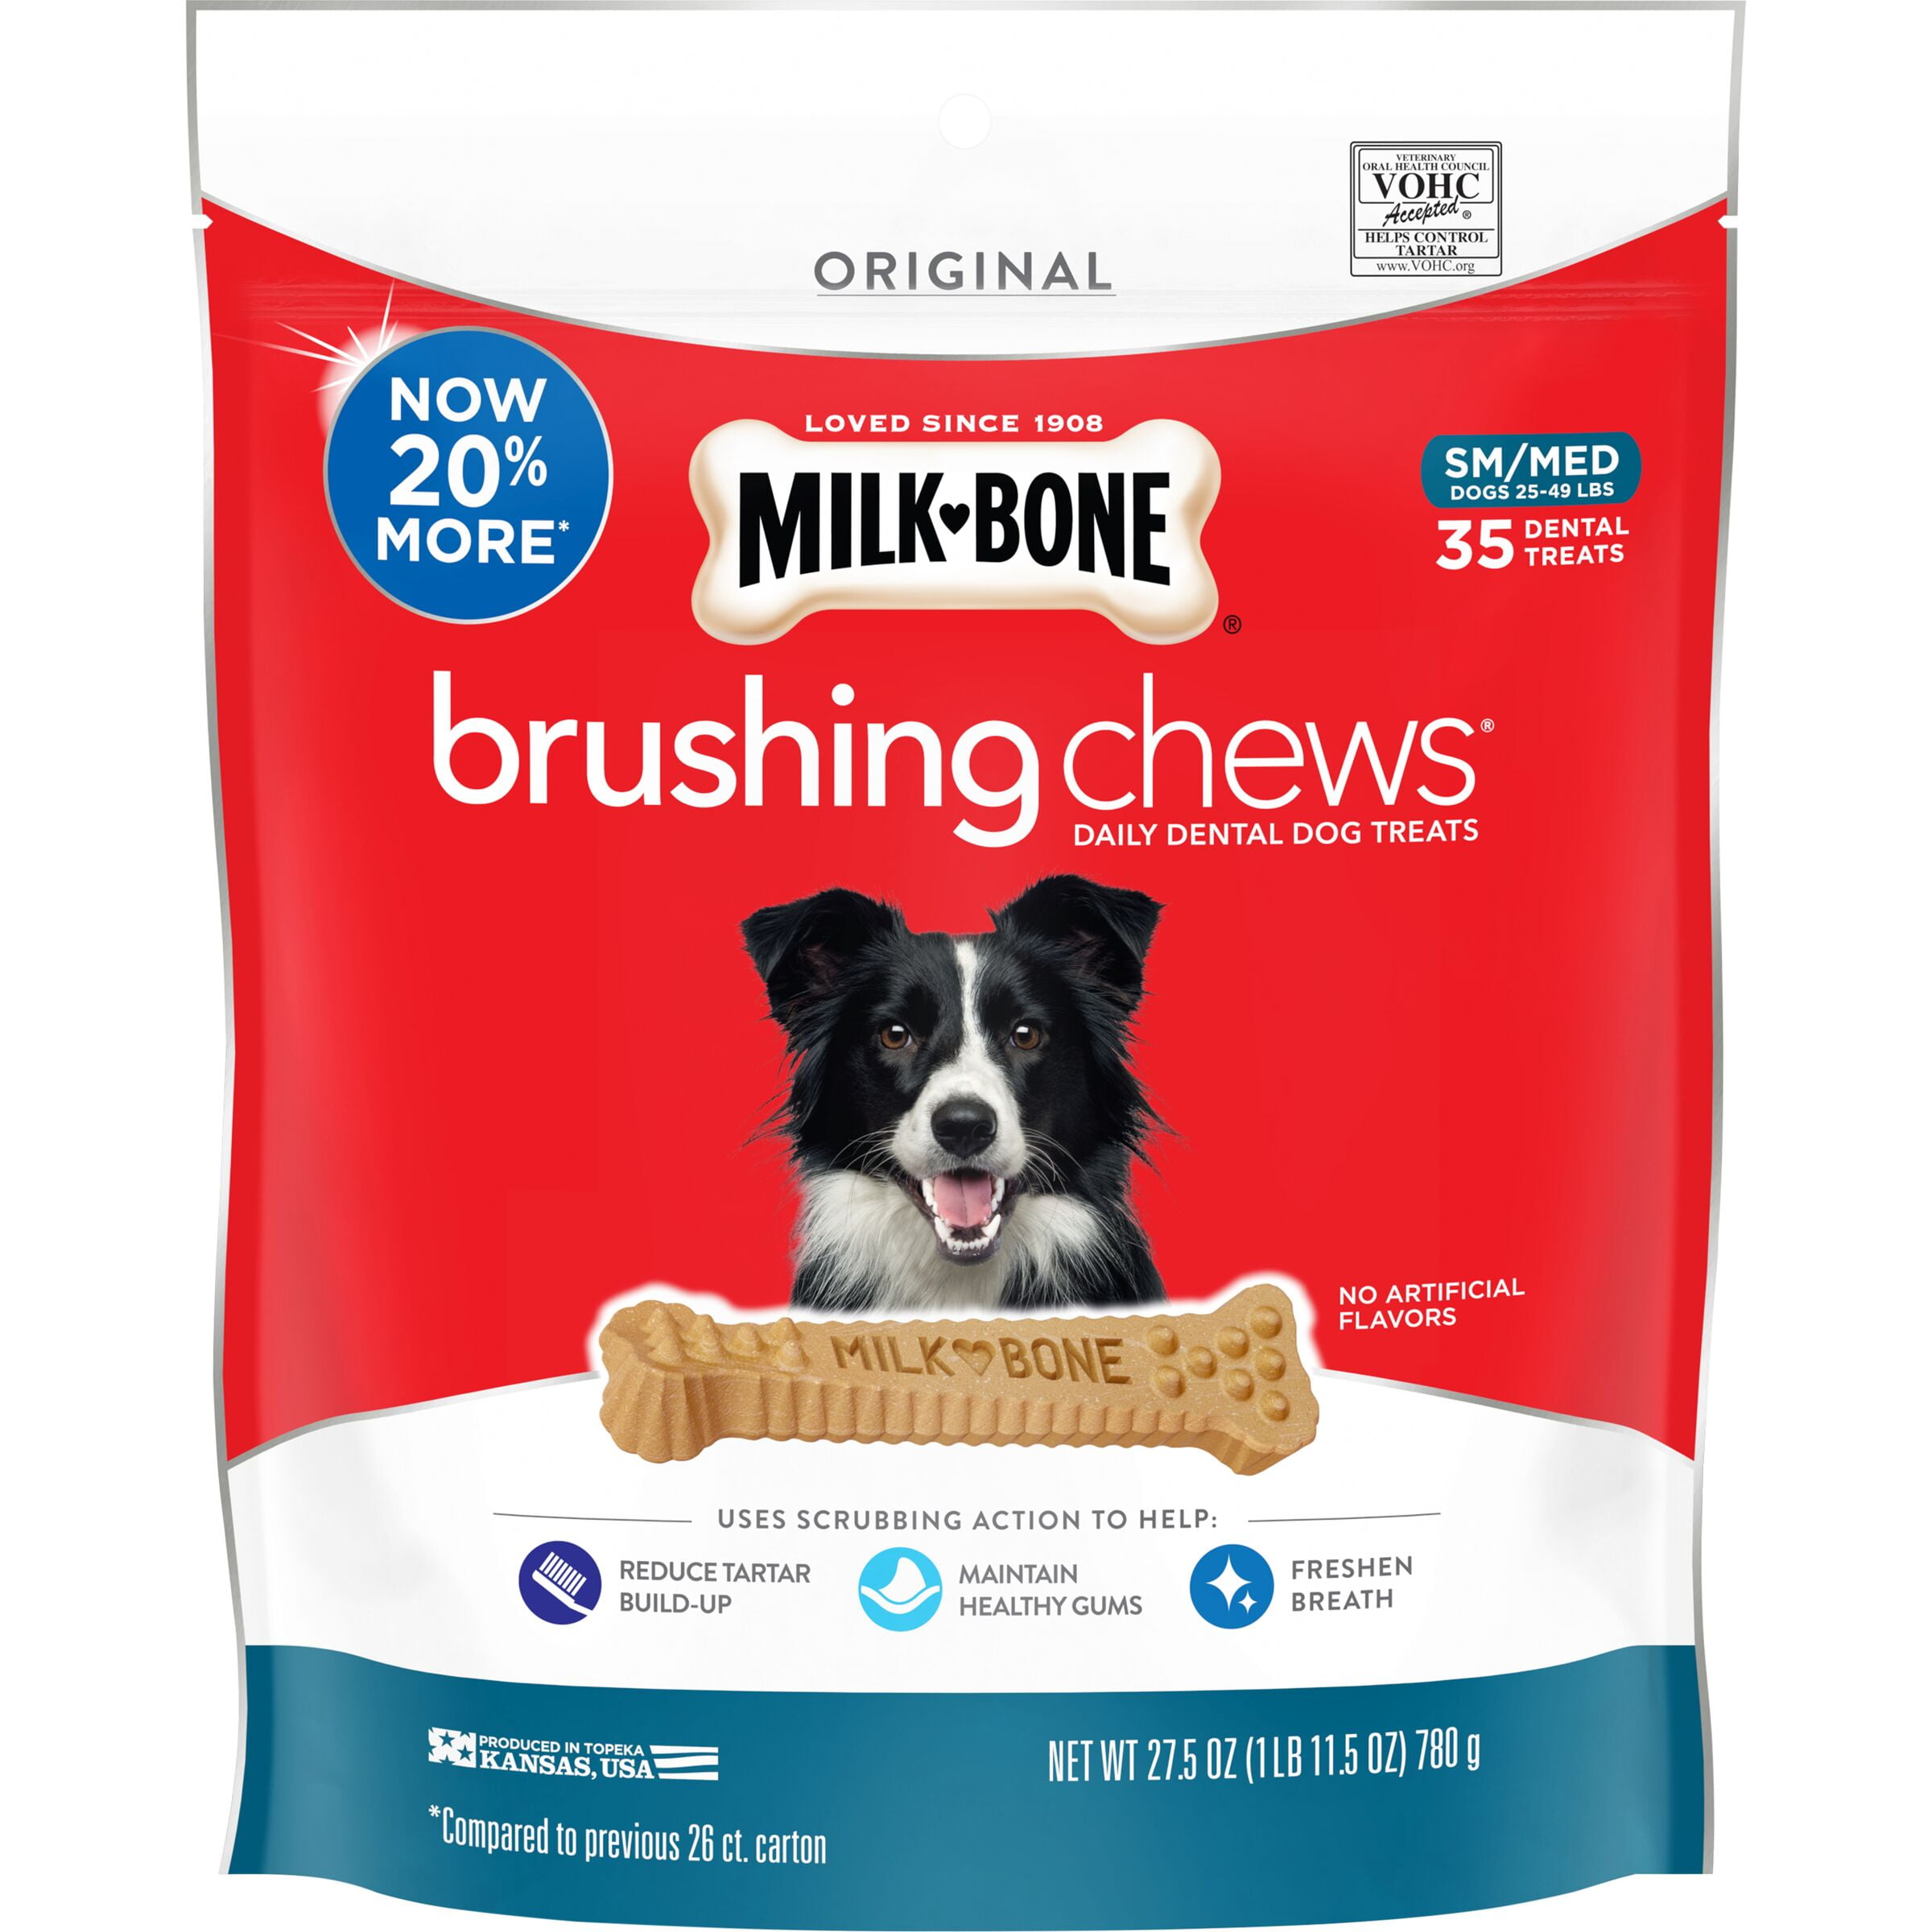 Milk-Bone Brushing Chews Daily Dental Dog Treats, Small-Medium, 27.5 oz., 35 Bones Per Bag